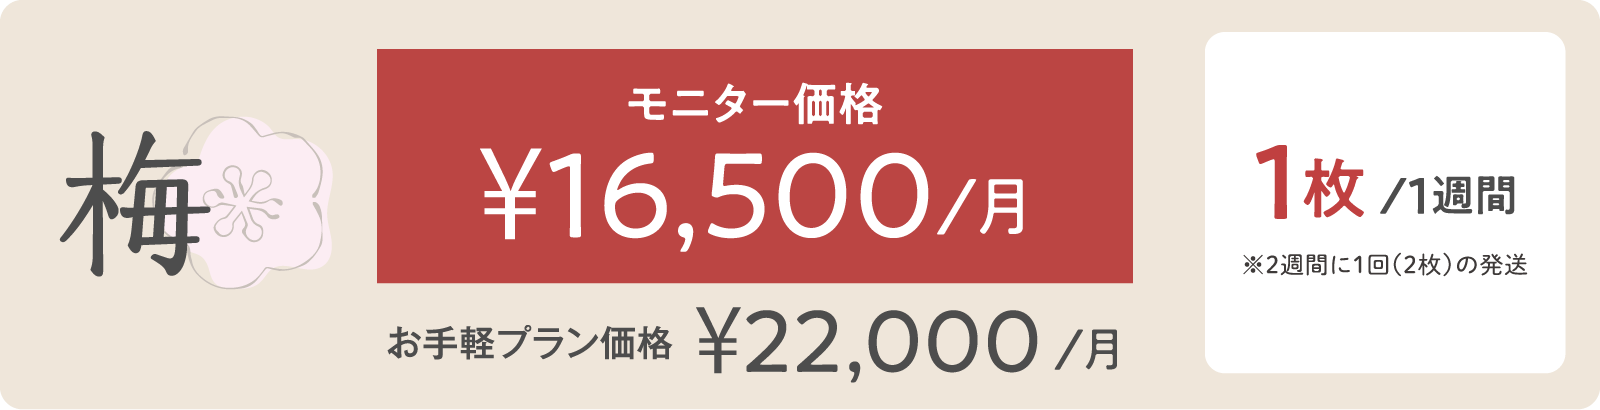 松モニター価格 ¥16,500/月 5枚/１週間